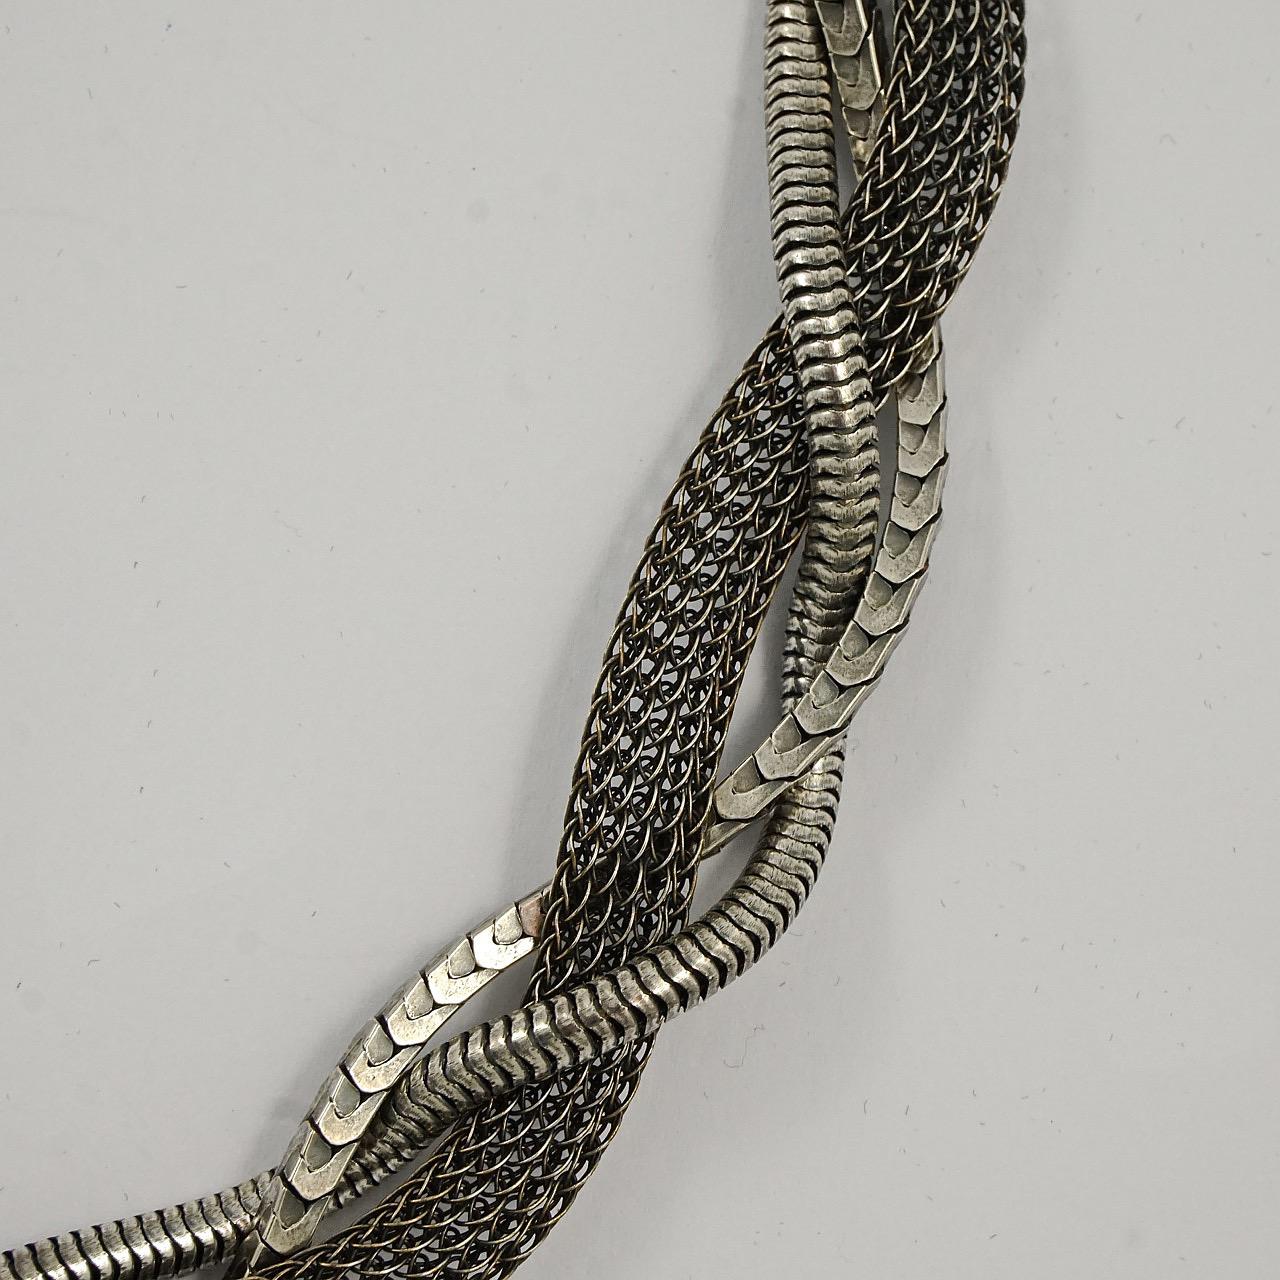 Ermani Bulatti Halskette in antikem Silberton, mit drei ineinander verwobenen Ketten in Maschen-, Schlangen- und einem ungewöhnlichen Kastenketten-Design. Sie hat einen großen Ringverschluss. Die Halskette ist 42cm lang mit einer Verlängerung von